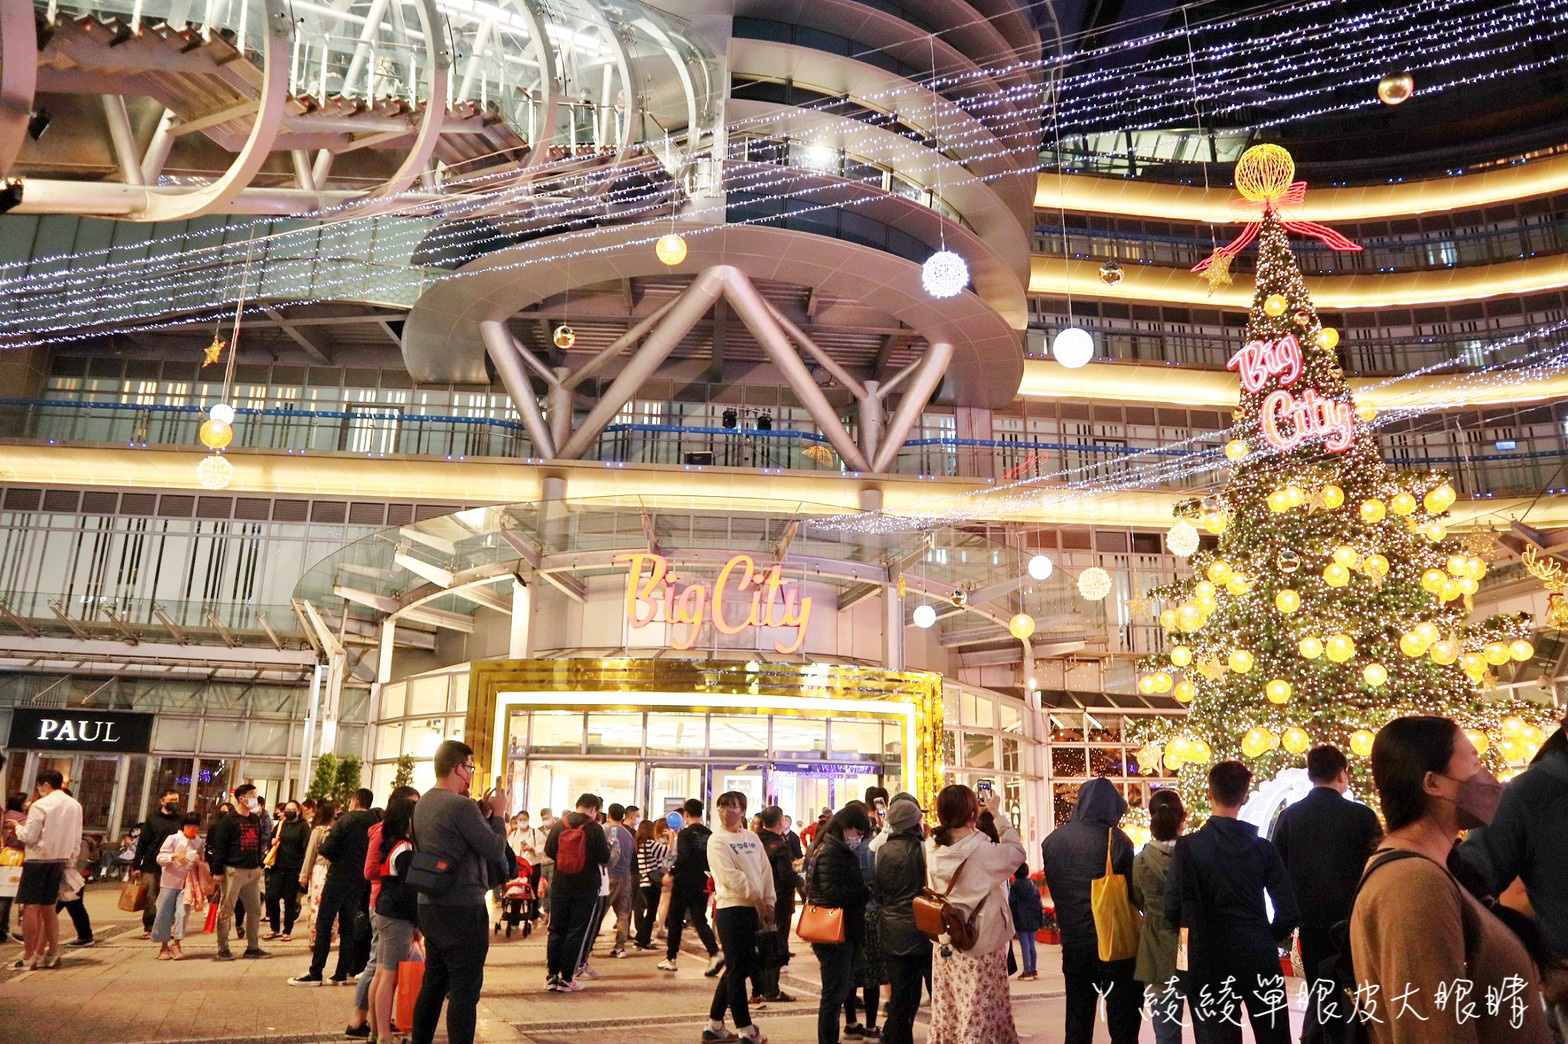 ﻿新竹巨城聖誕樹點燈儀式本週六登場！15米高聖誕樹即將亮起，重溫滿滿的聖誕氛圍